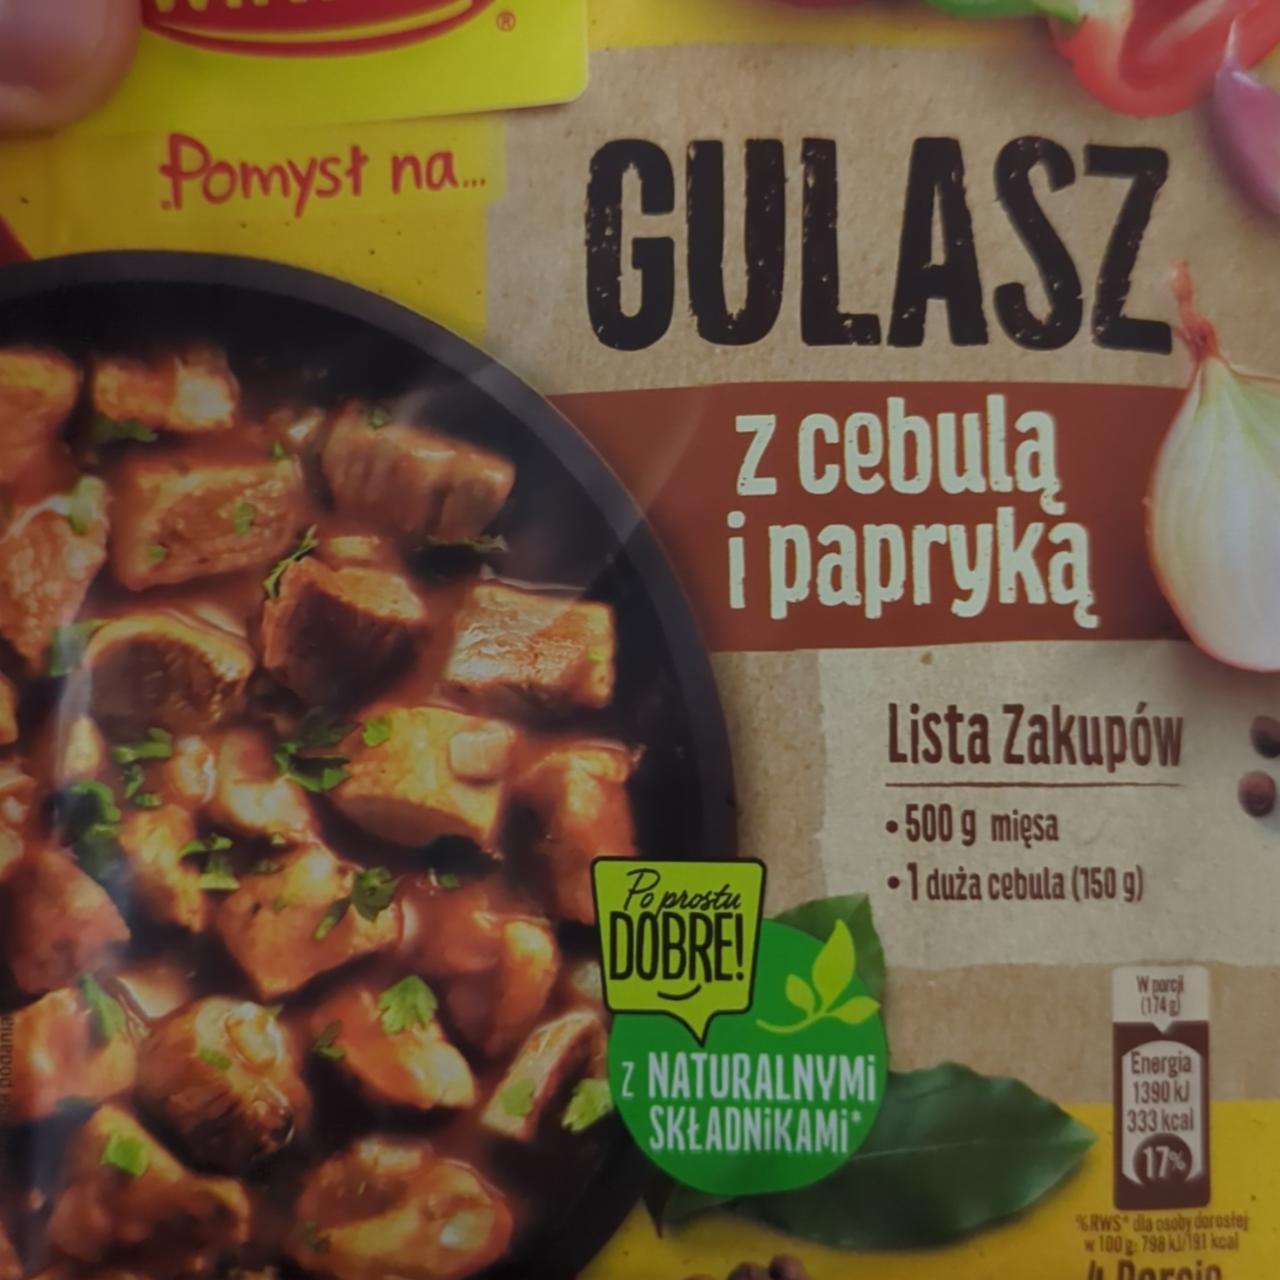 Zdjęcia - Pomysł na Gulasz z cebulą i papryka poprawny Winiary